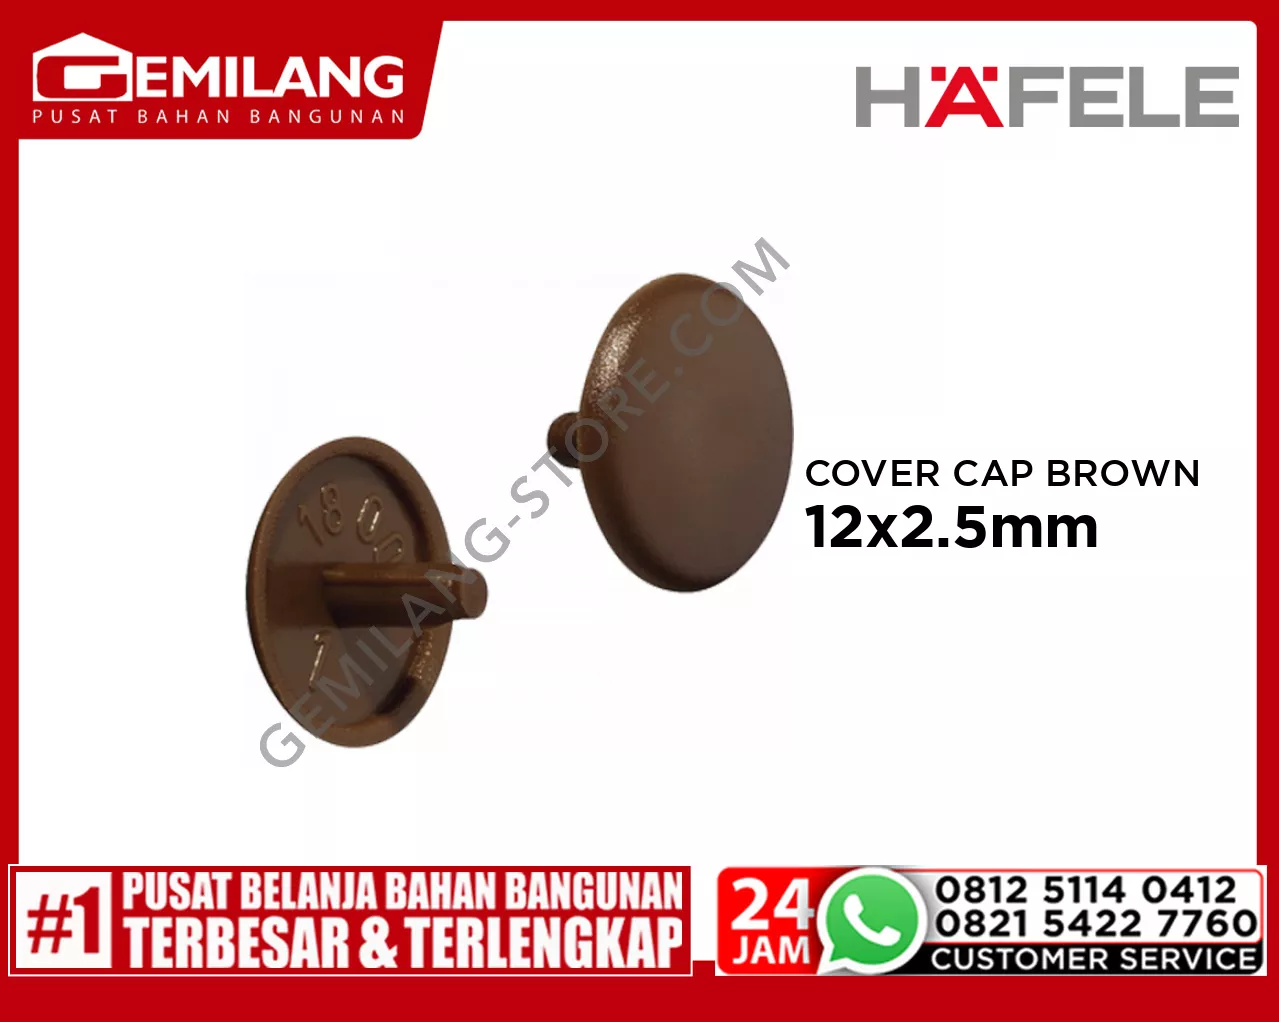 HAFELE COVER CAP BROWN 12 x 2.5mm 10pc (04504107)